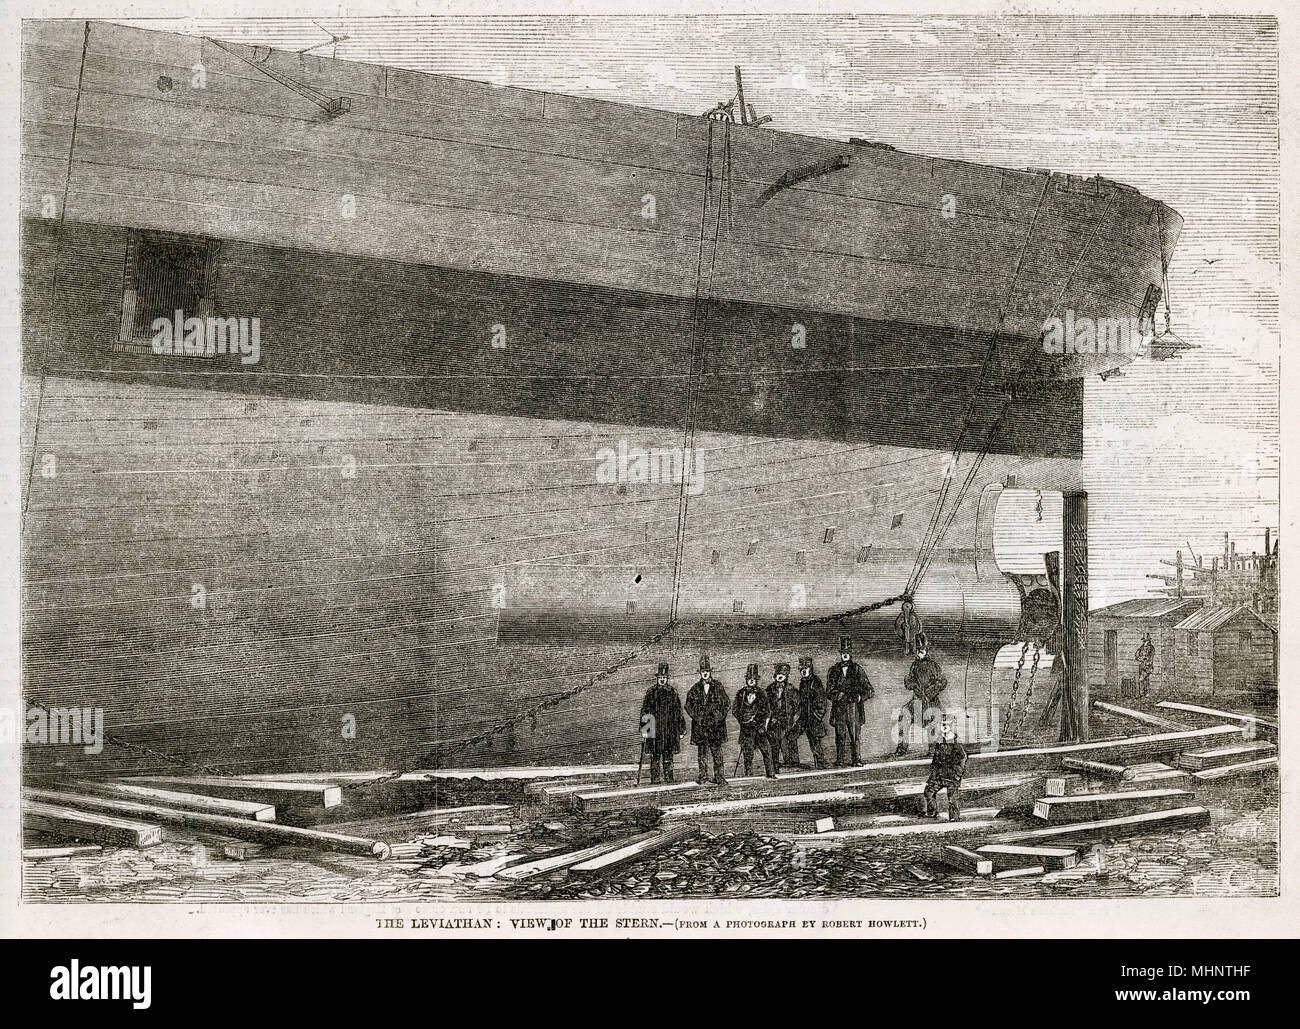 Isambard Kingdom Brunel (tercera desde la izquierda) entre un grupo de figuras en la popa del "Great Eastern S', lo que demuestra la magnitud del barco de vapor. Fecha: 1857 Foto de stock